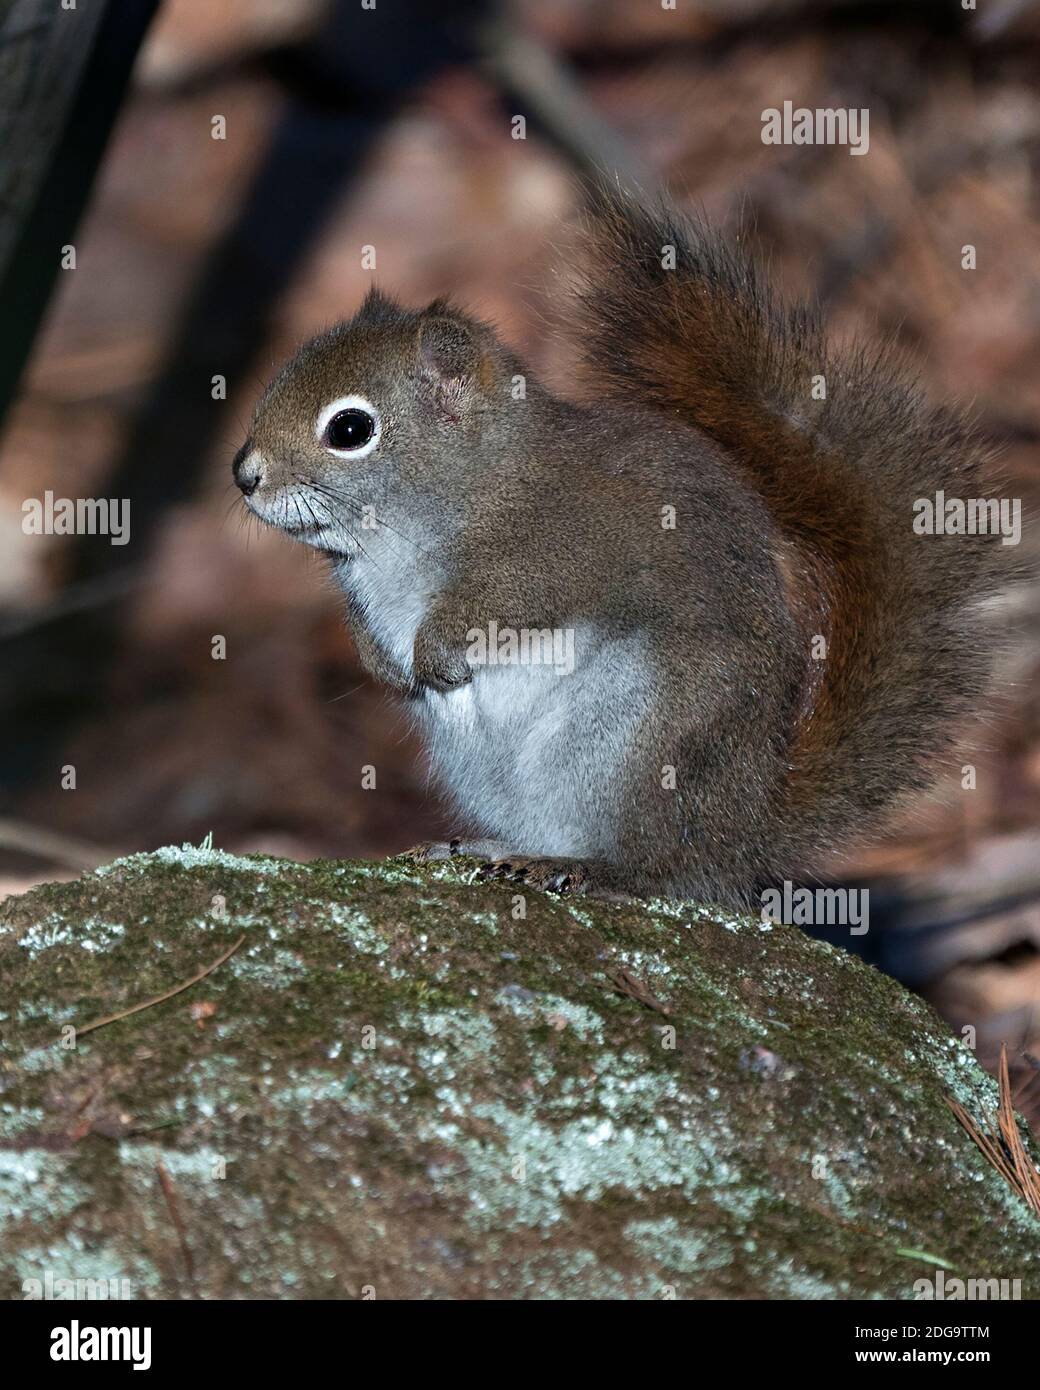 Eichhörnchen Nahaufnahme Profil Seitenansicht auf einem Moosfelsen mit einem unscharfen Hintergrund sitzend, zeigt buschigen Schwanz, braunes Fell in seiner Umgebung und Lebensraum. Stockfoto